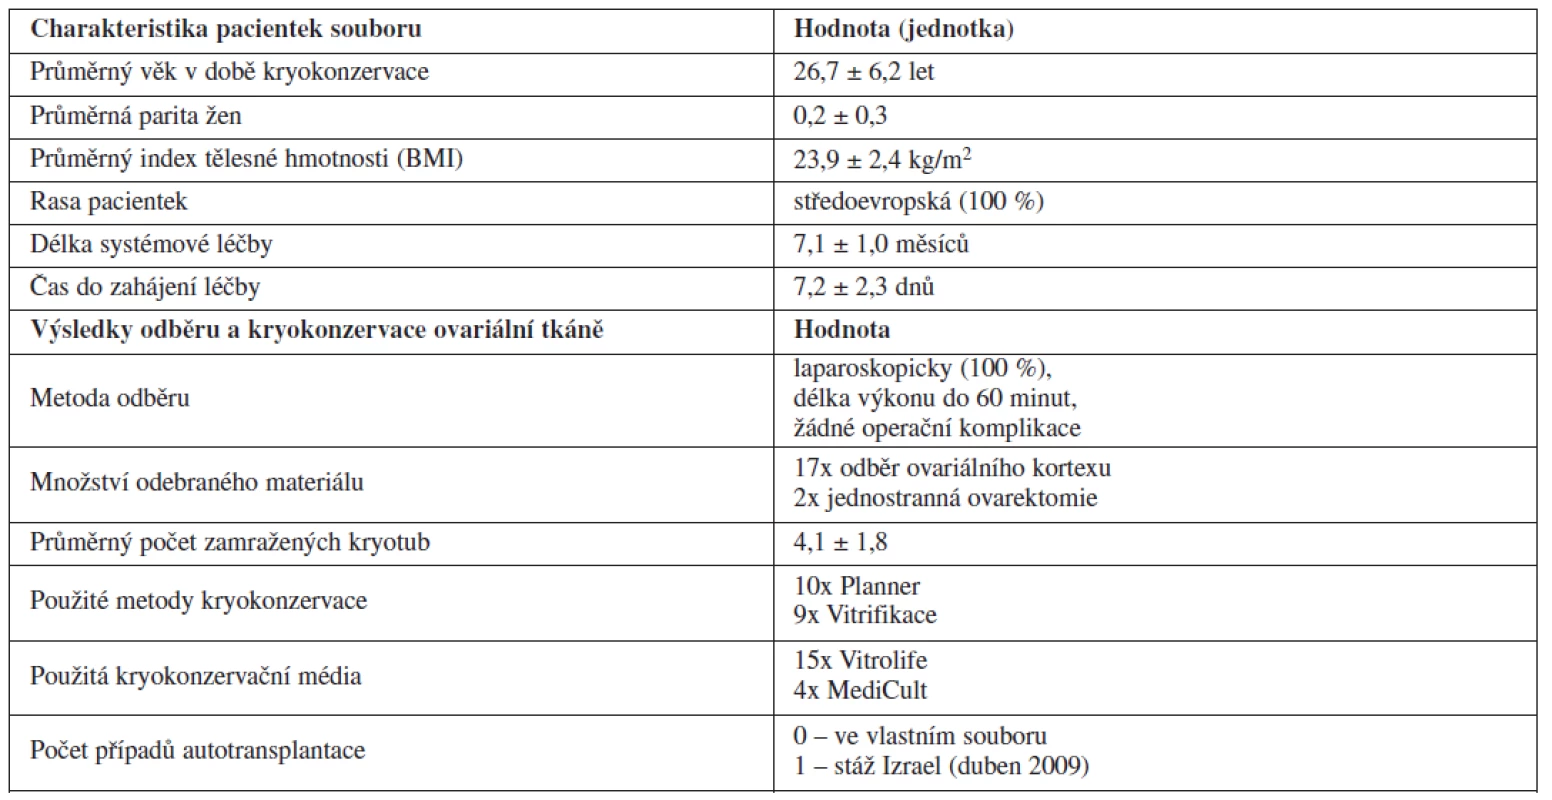 Výsledky kryokonzervace ovariální tkáně před gonadotoxickou léčbou (Gynekologicko-porodnická klinika LF MU a FN Brno, leden 2005 – leden 2011)